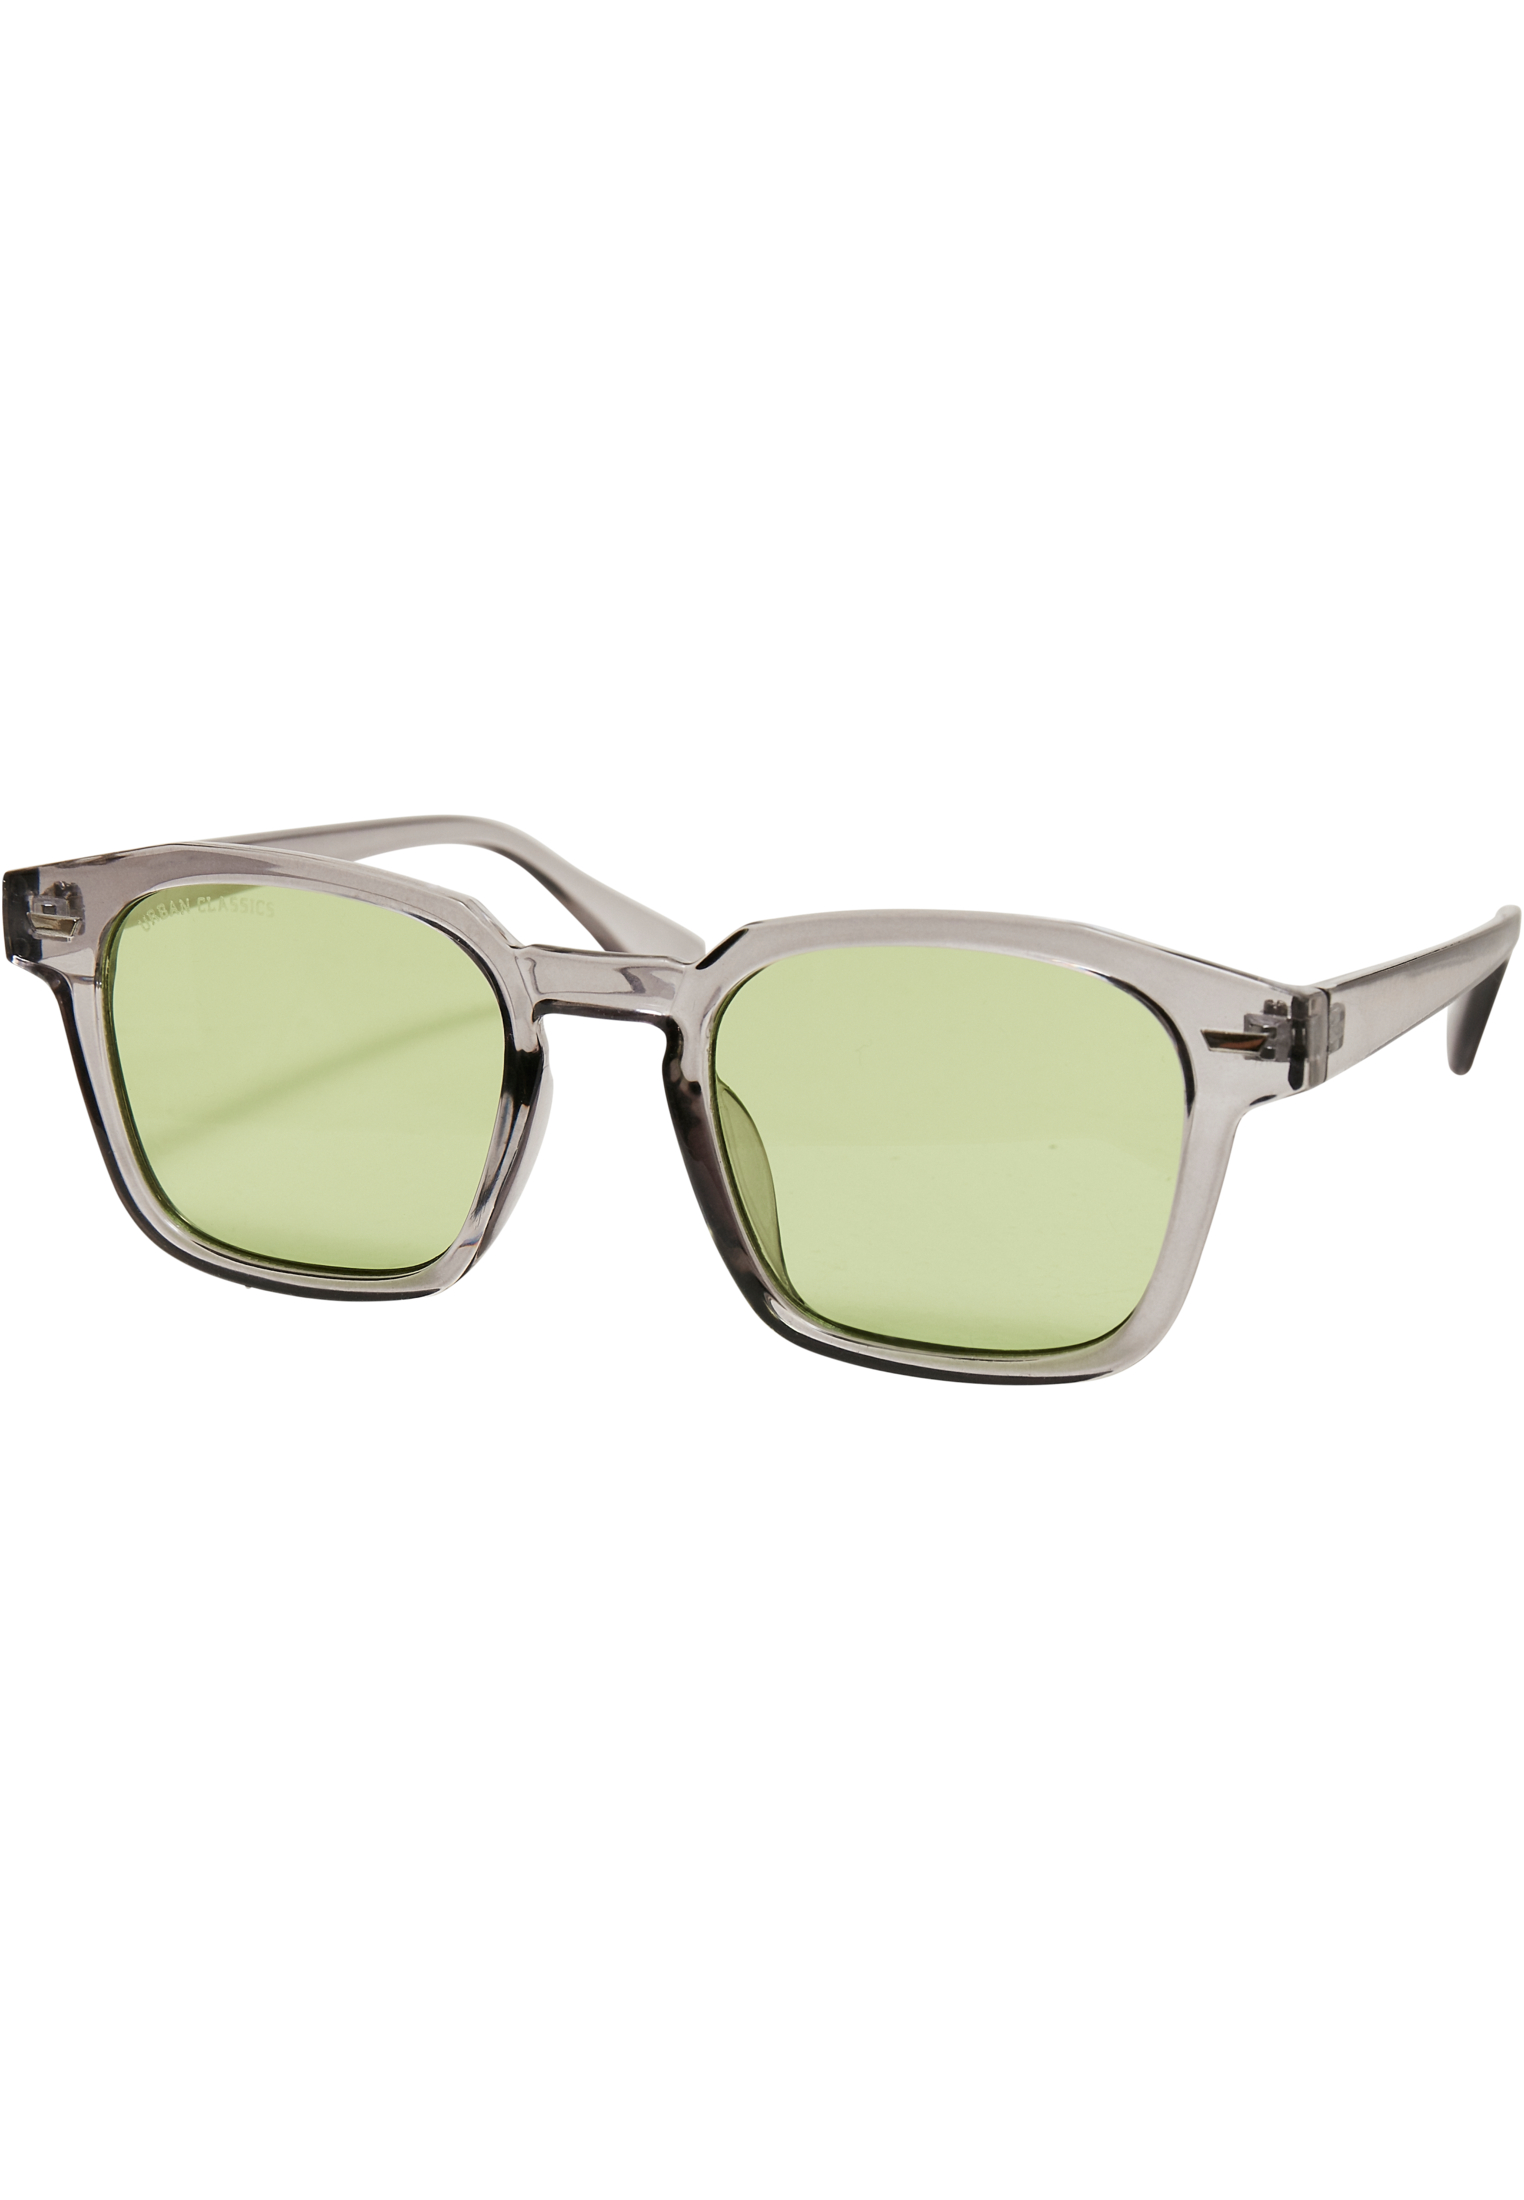 Case-TB5210 Maui Sunglasses With